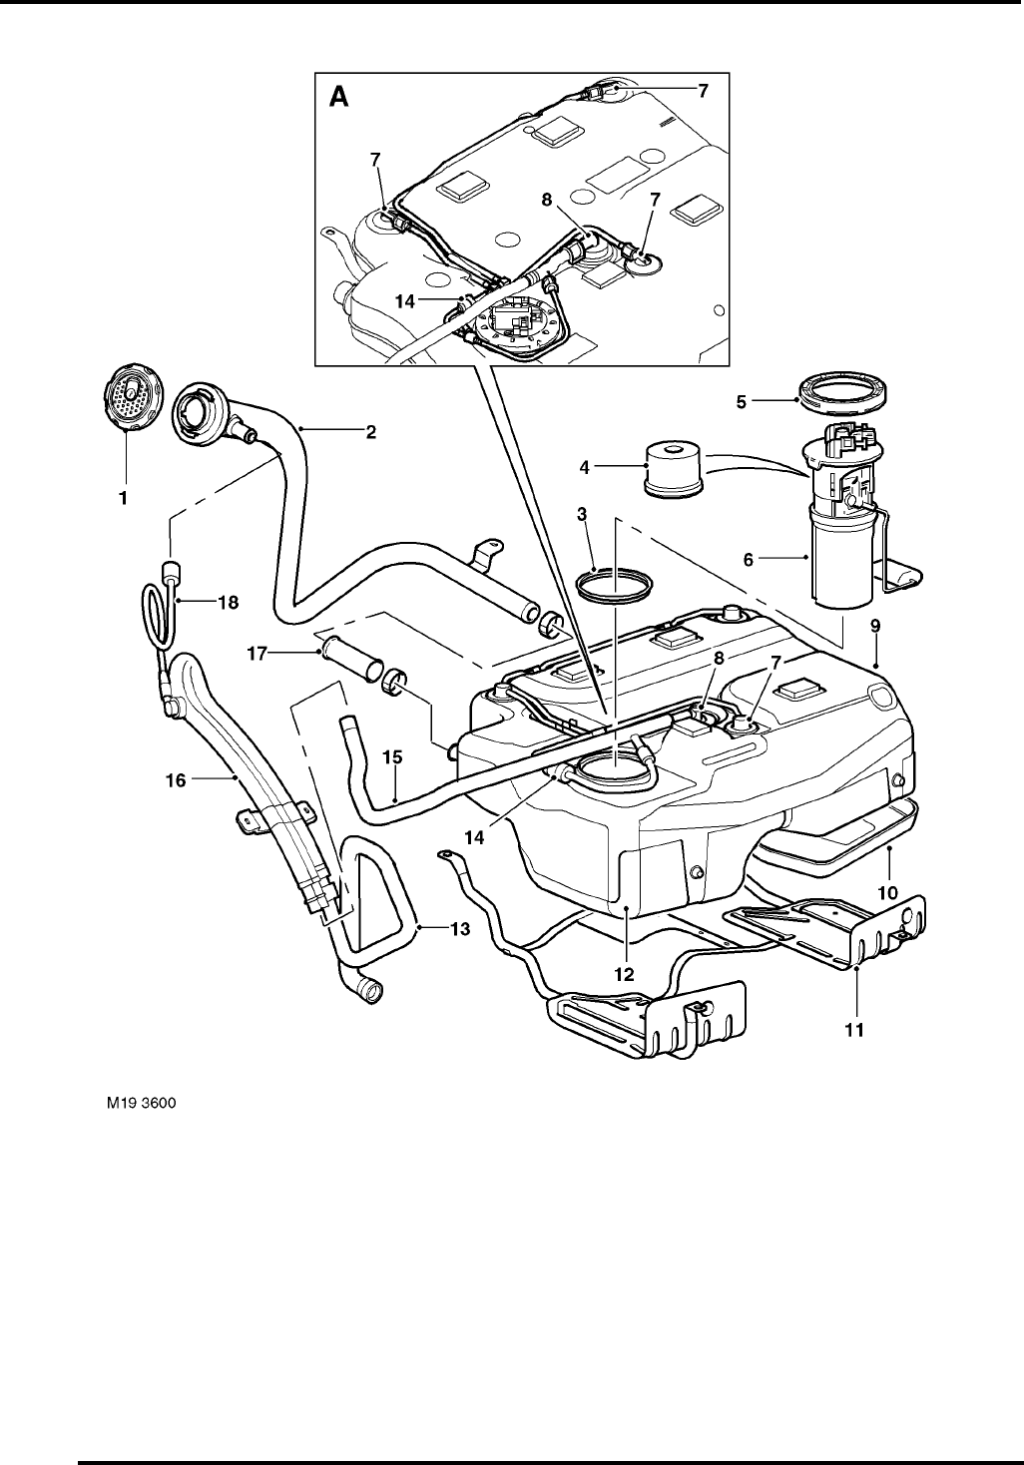 Picture of: Land Rover Freelander Workshop Manual PDF  Land rover freelander